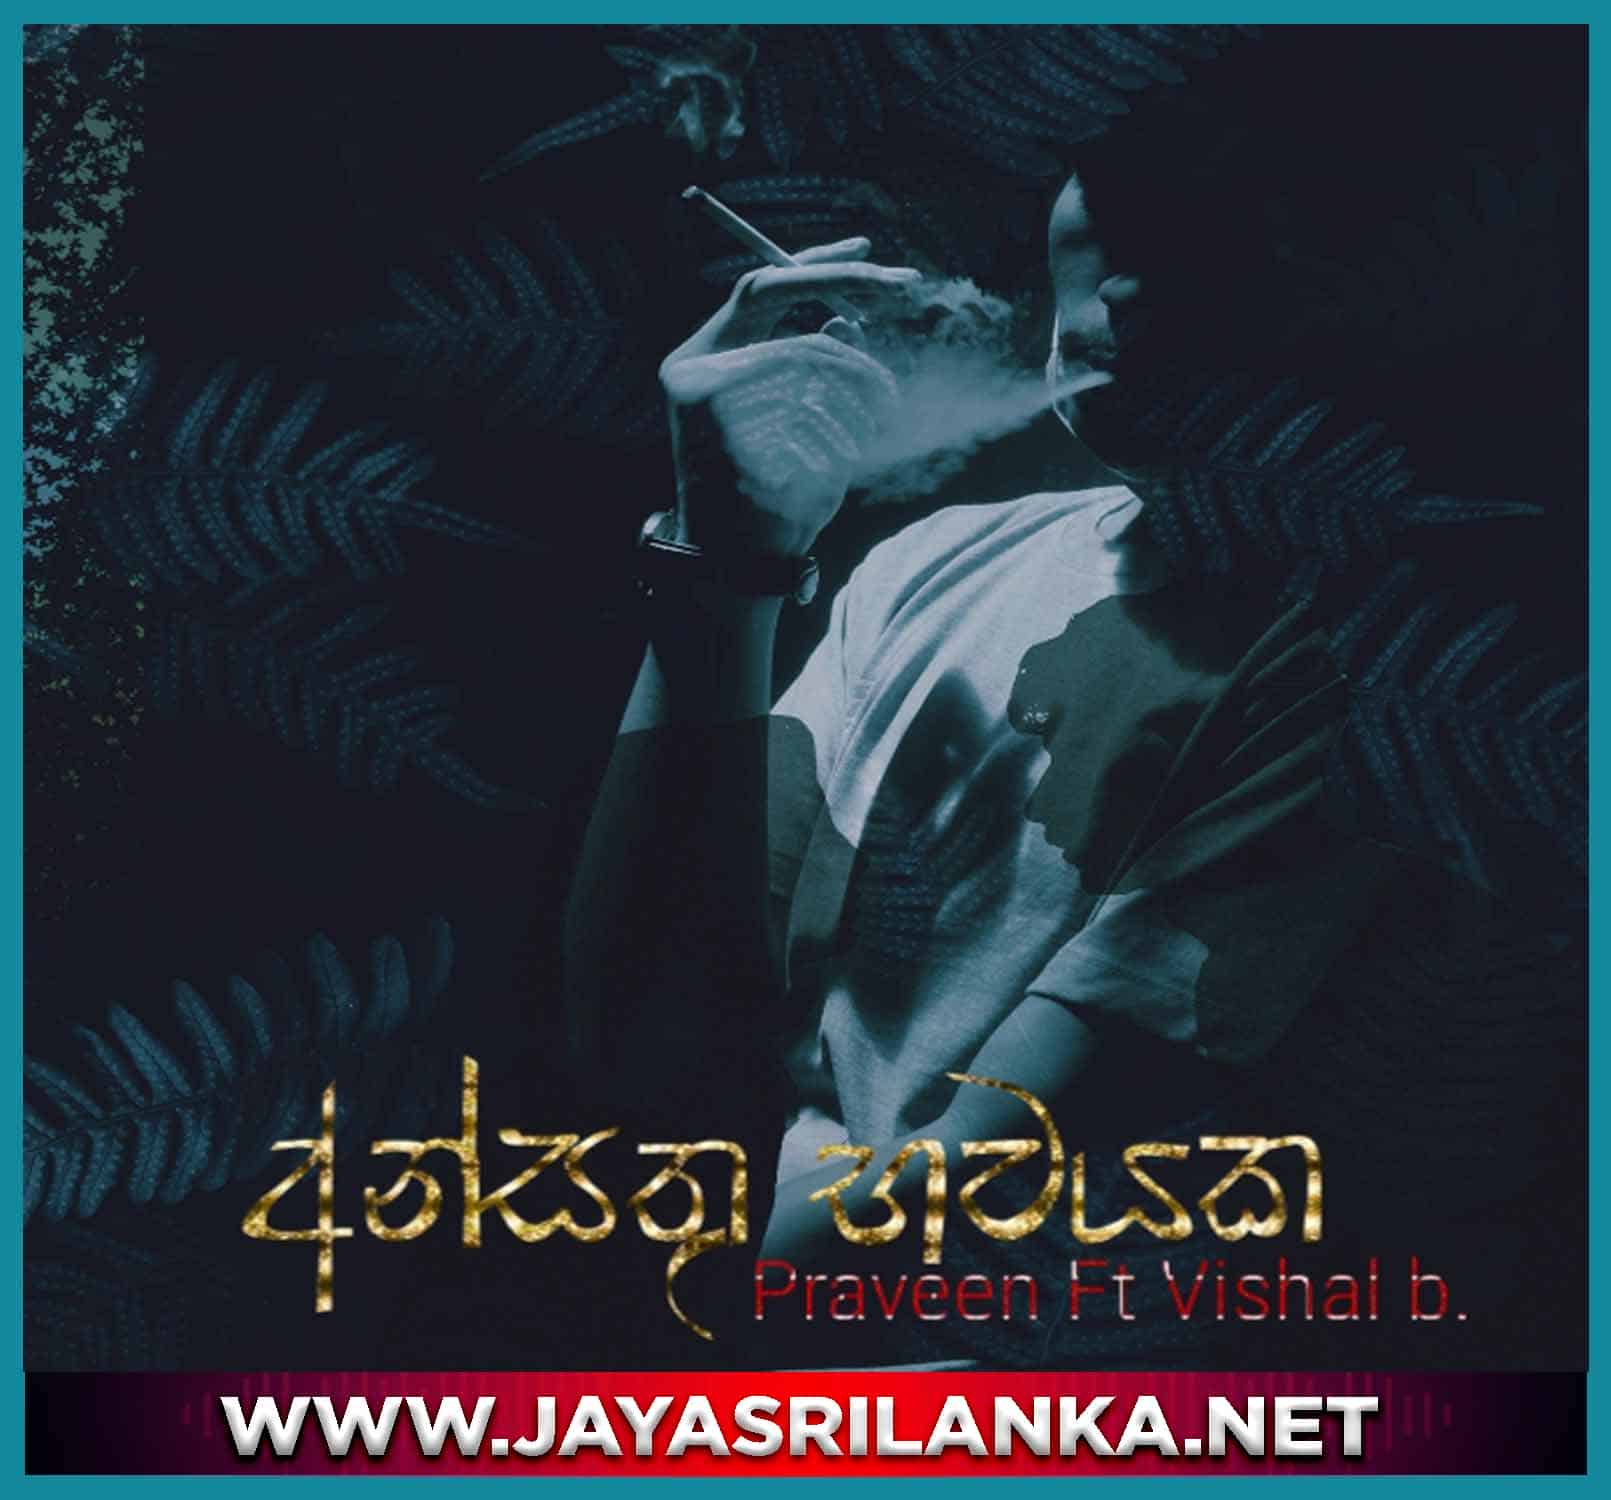 jayasrilanka ~ Ansthu Bhawayaka - Praveen ft Vishal B